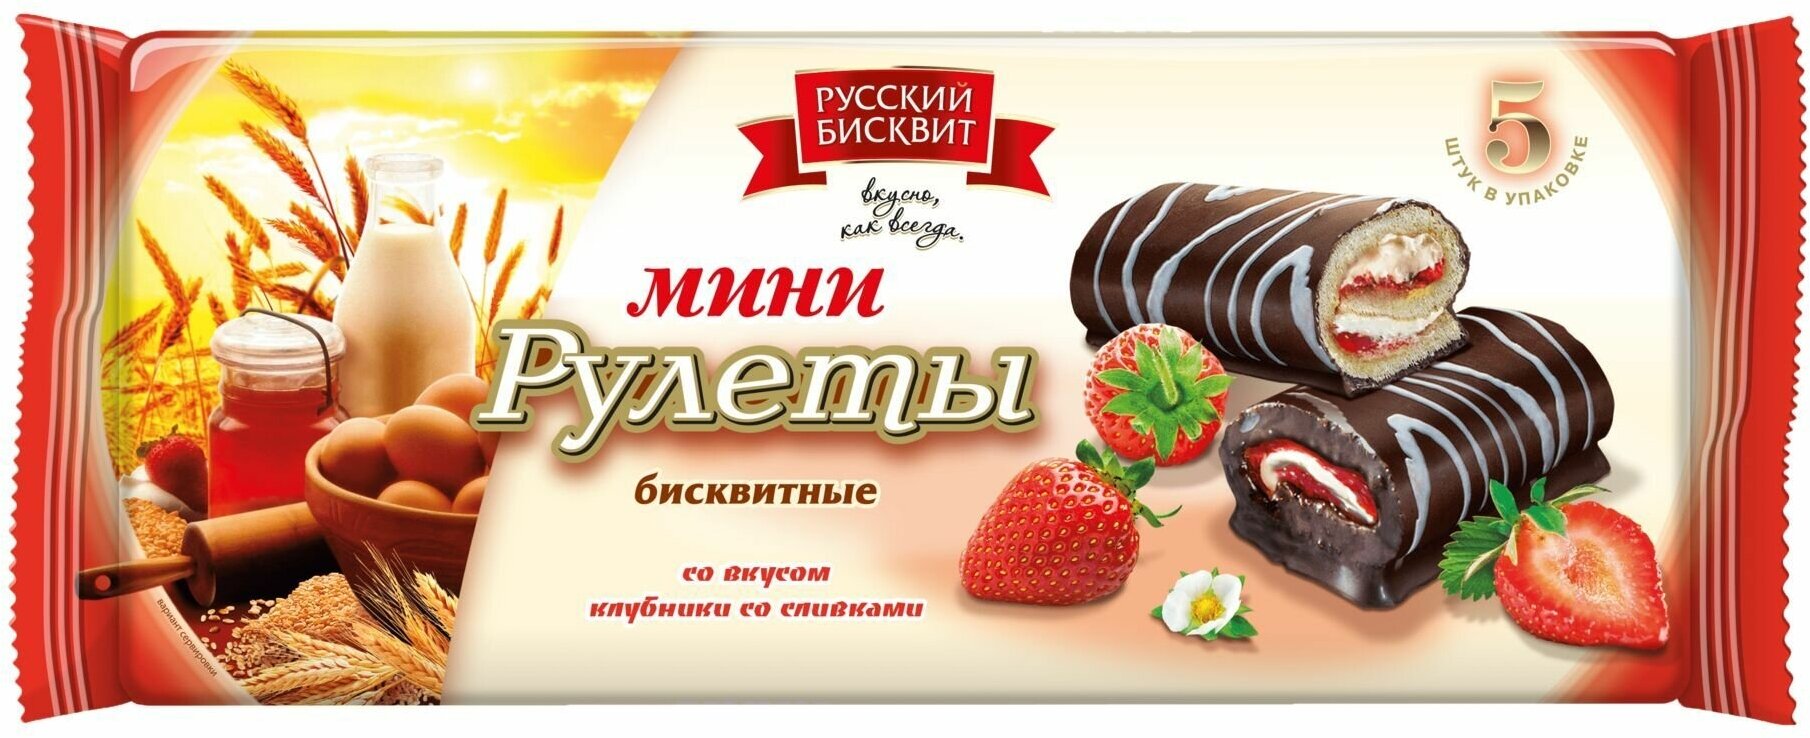 Мини-рулеты бисквитные клубника со сливками "Русский бисквит" 175 г